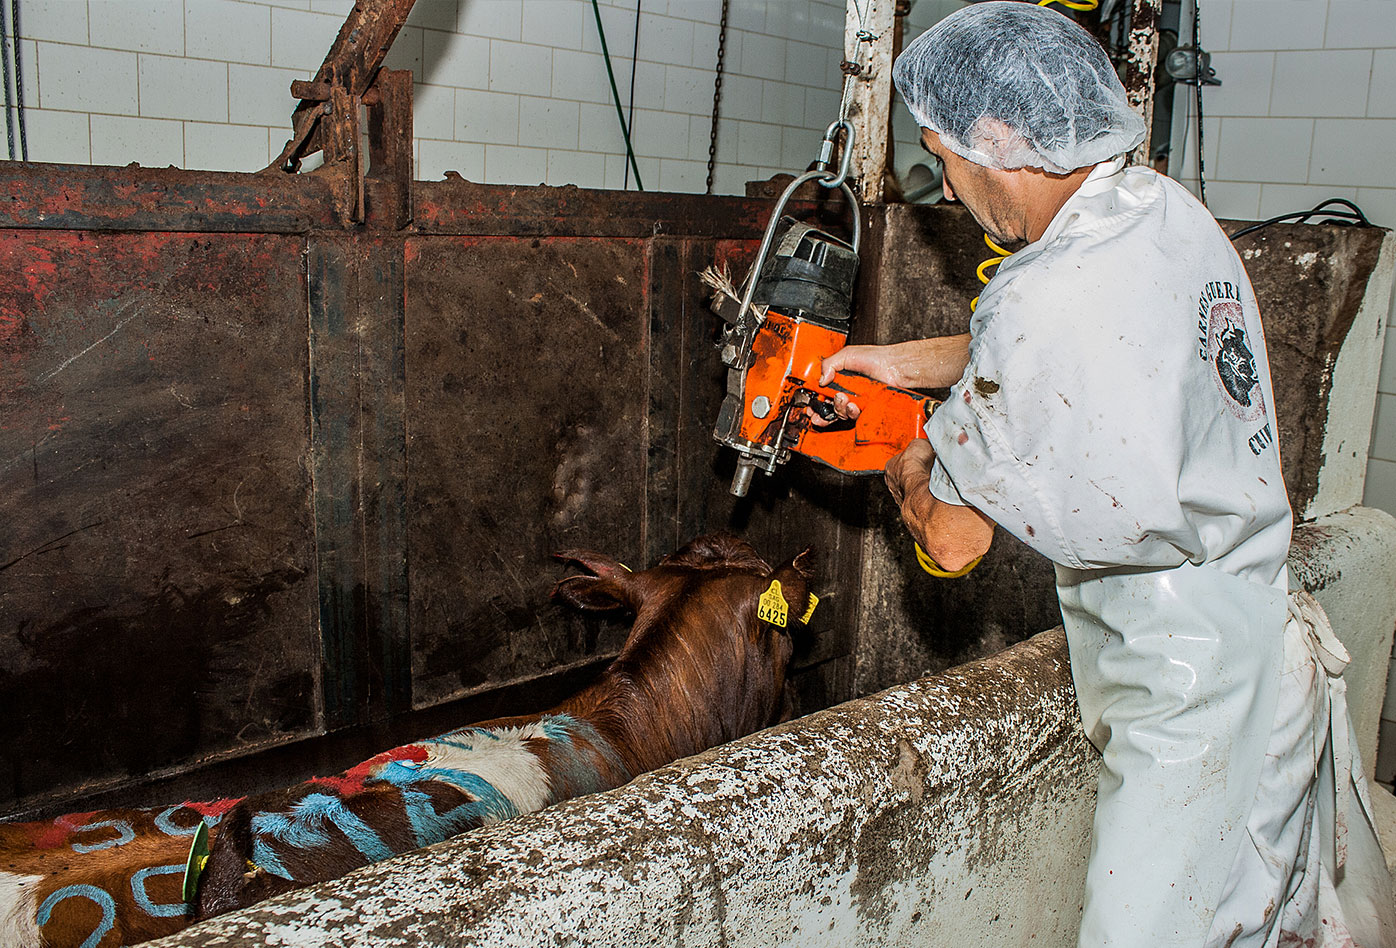 Una vaca cubierta en marcas de pintura es inmobilizada en el sistema de restricción del cuerpo mientras un trabajador se prepara para aturdirla con un perno cautivo en la cabeza・Gabriela Penela・We Animals Media